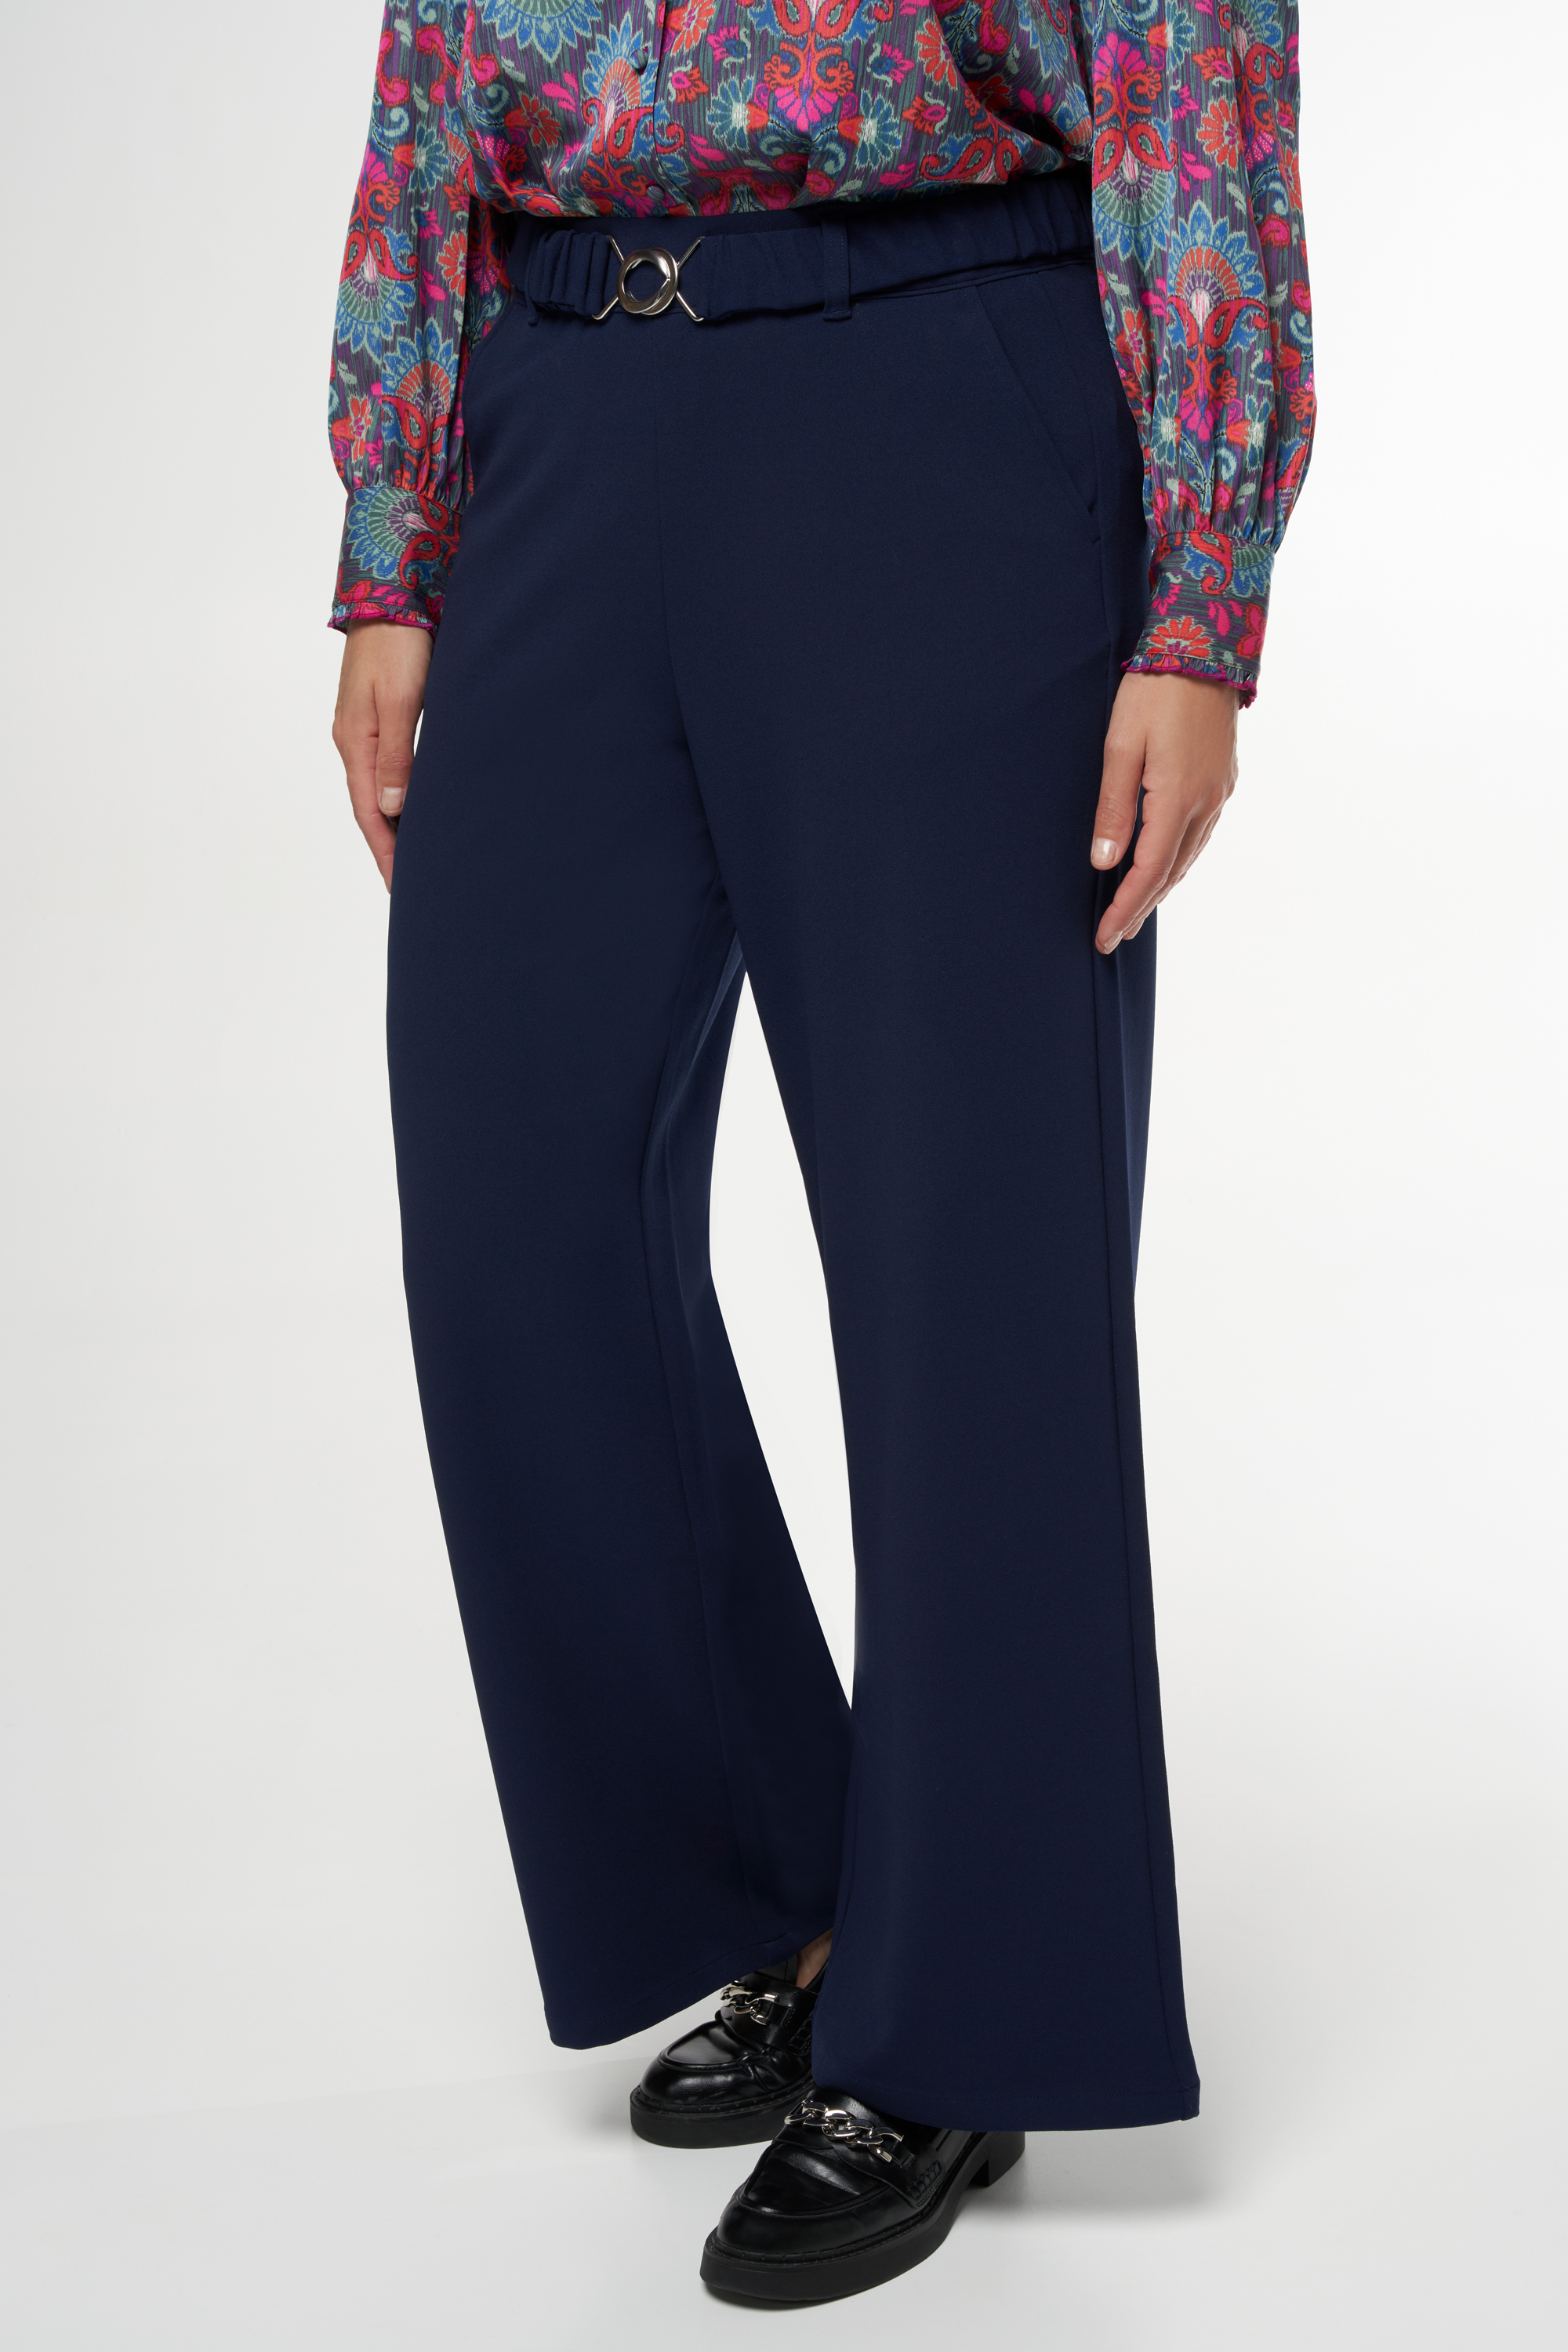 Damen Hose mit dazu passendem Gürtel Navyblau | MS Mode | Stoffhosen